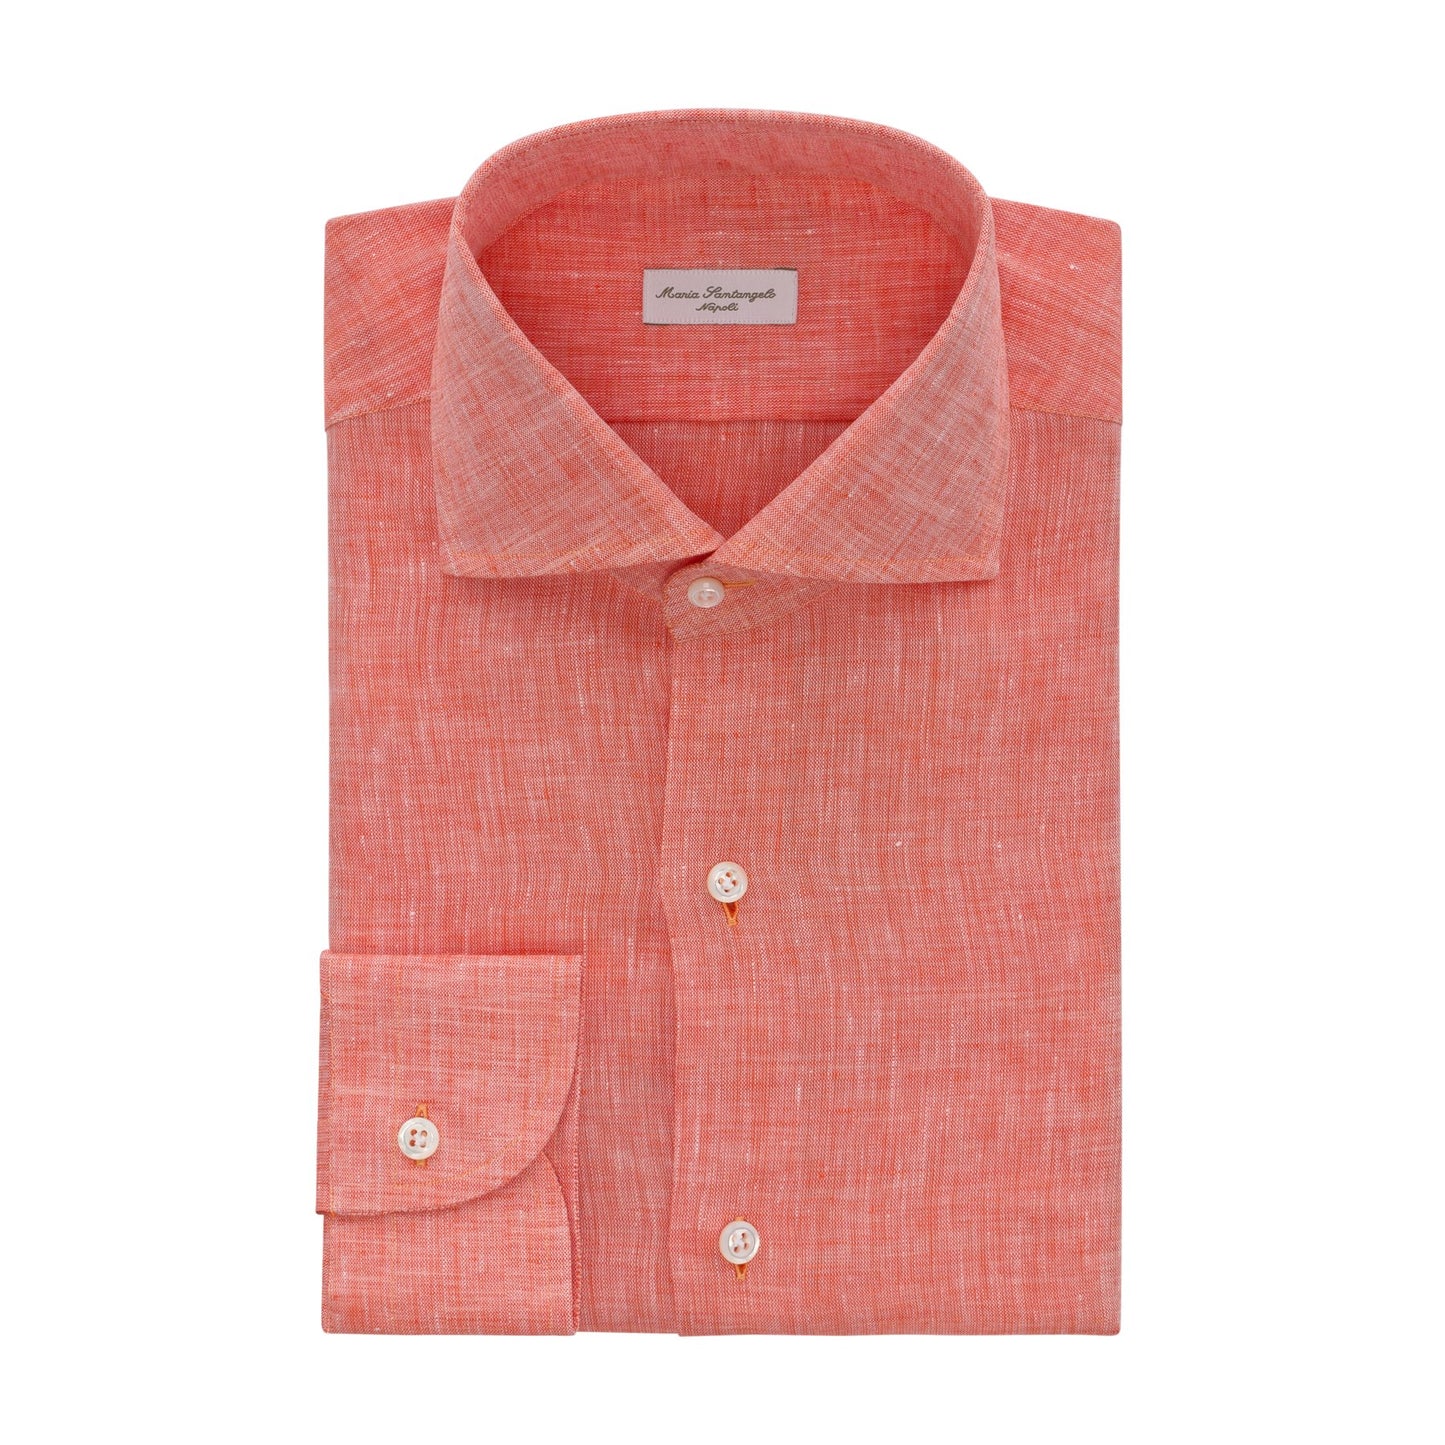 Maria Santangelo Linen Shirt in Pink Orange - SARTALE